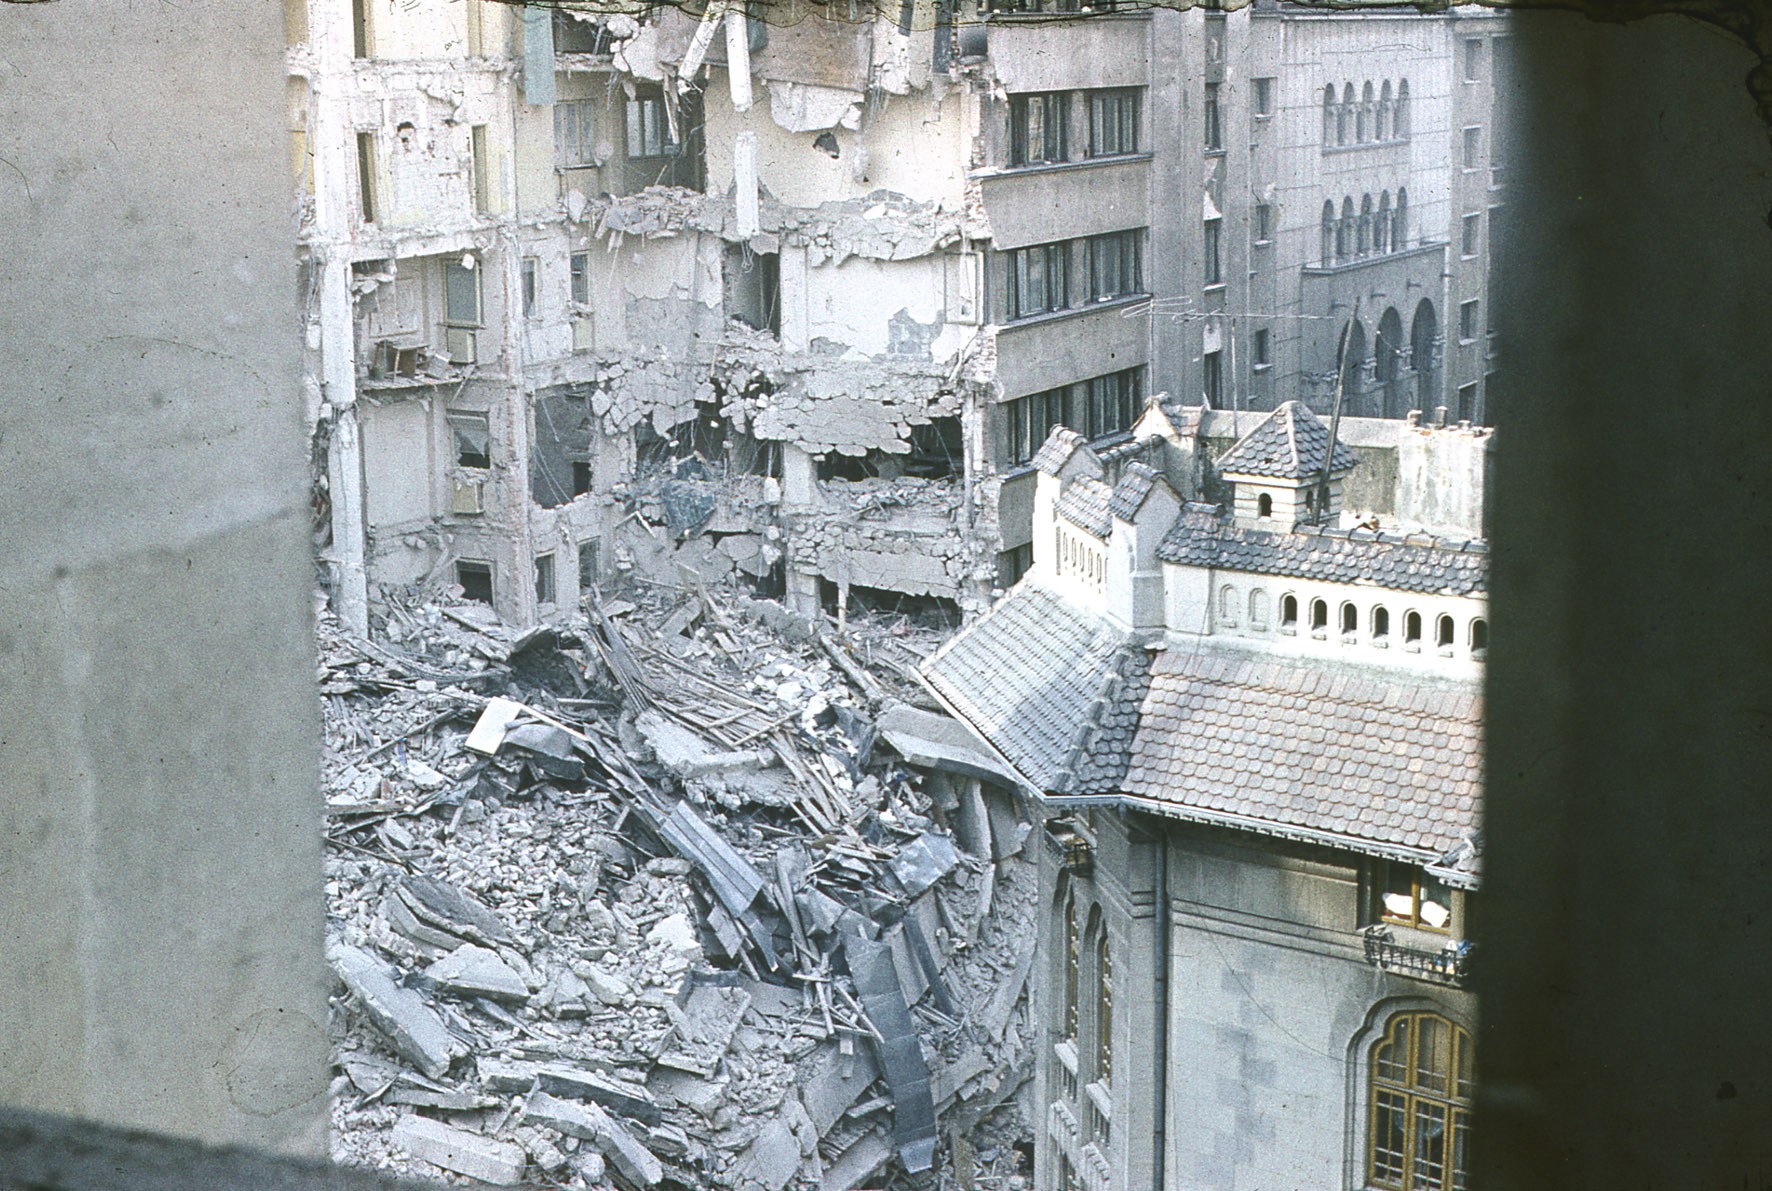 Pe 4 martie 1977 avea loc un cutremur de 7.2 grade pe scara Richter, care a dus la moartea a peste 1500 de persoane.